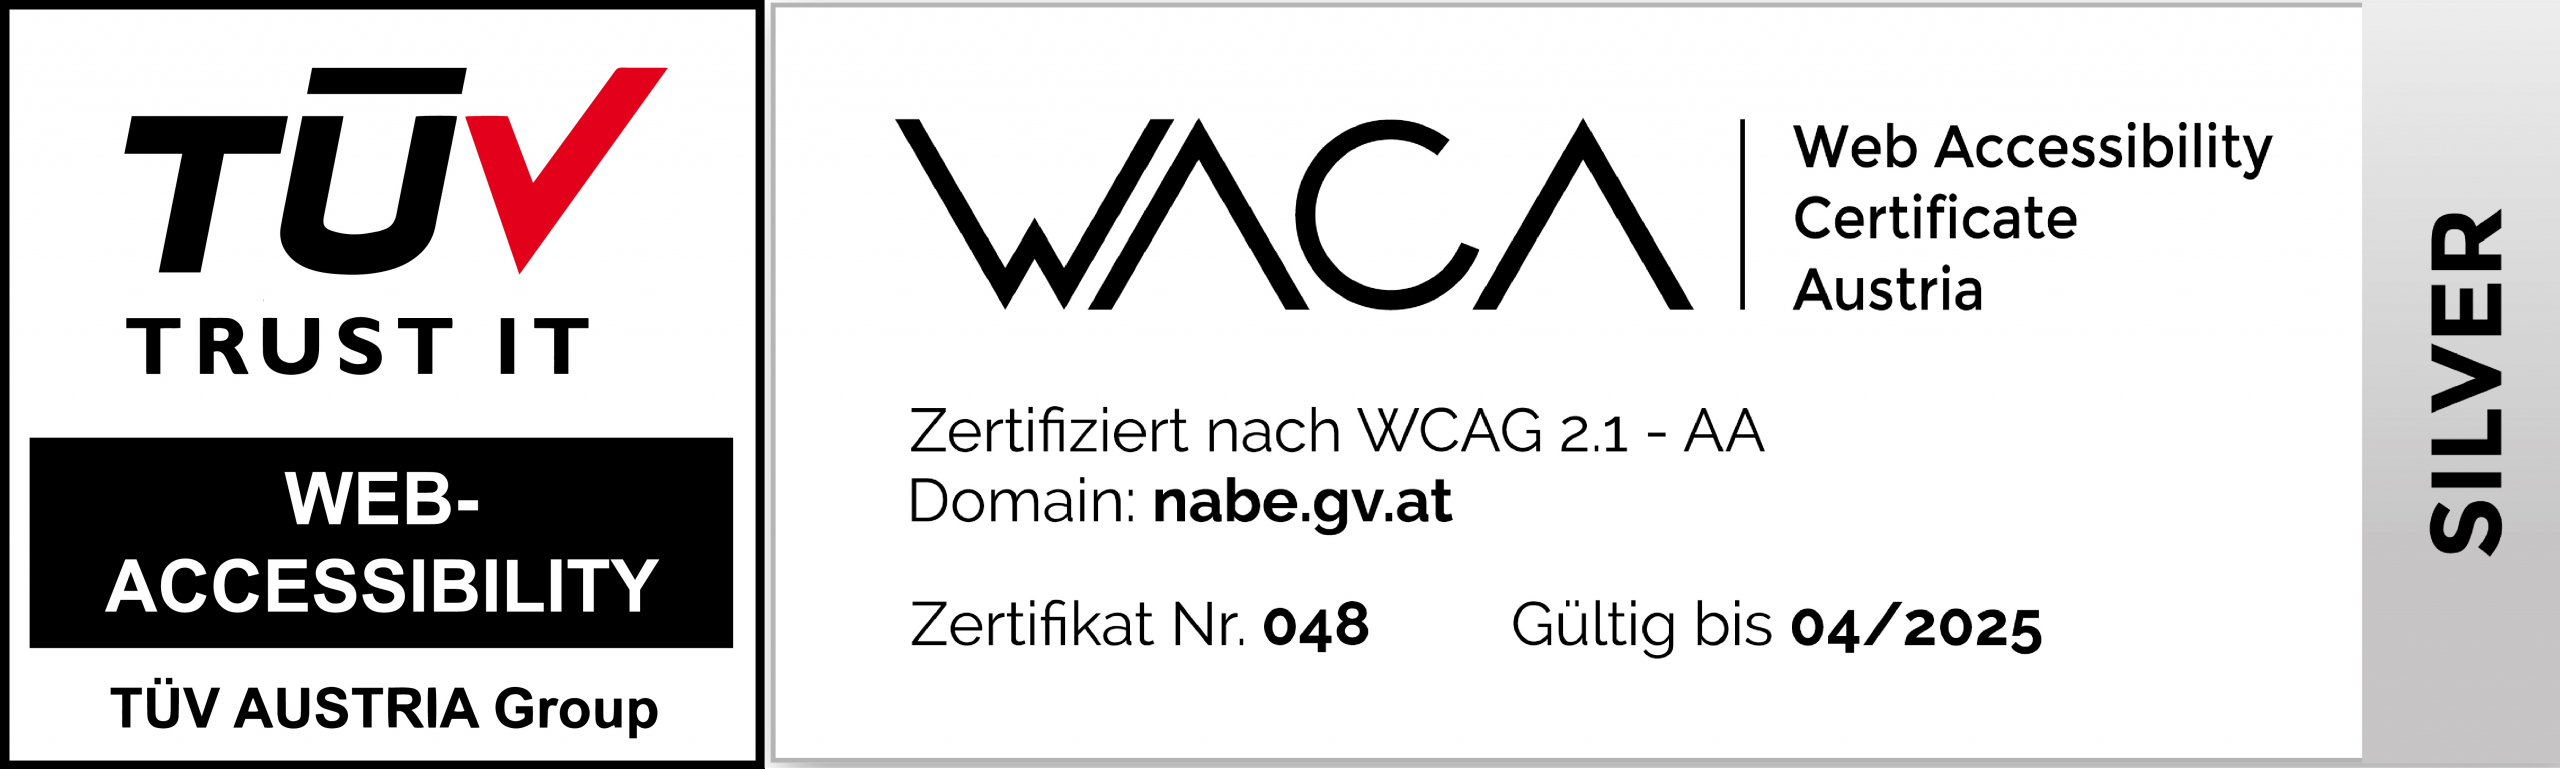 WACA Zertifizierungsbestätigung und TÜV Logo